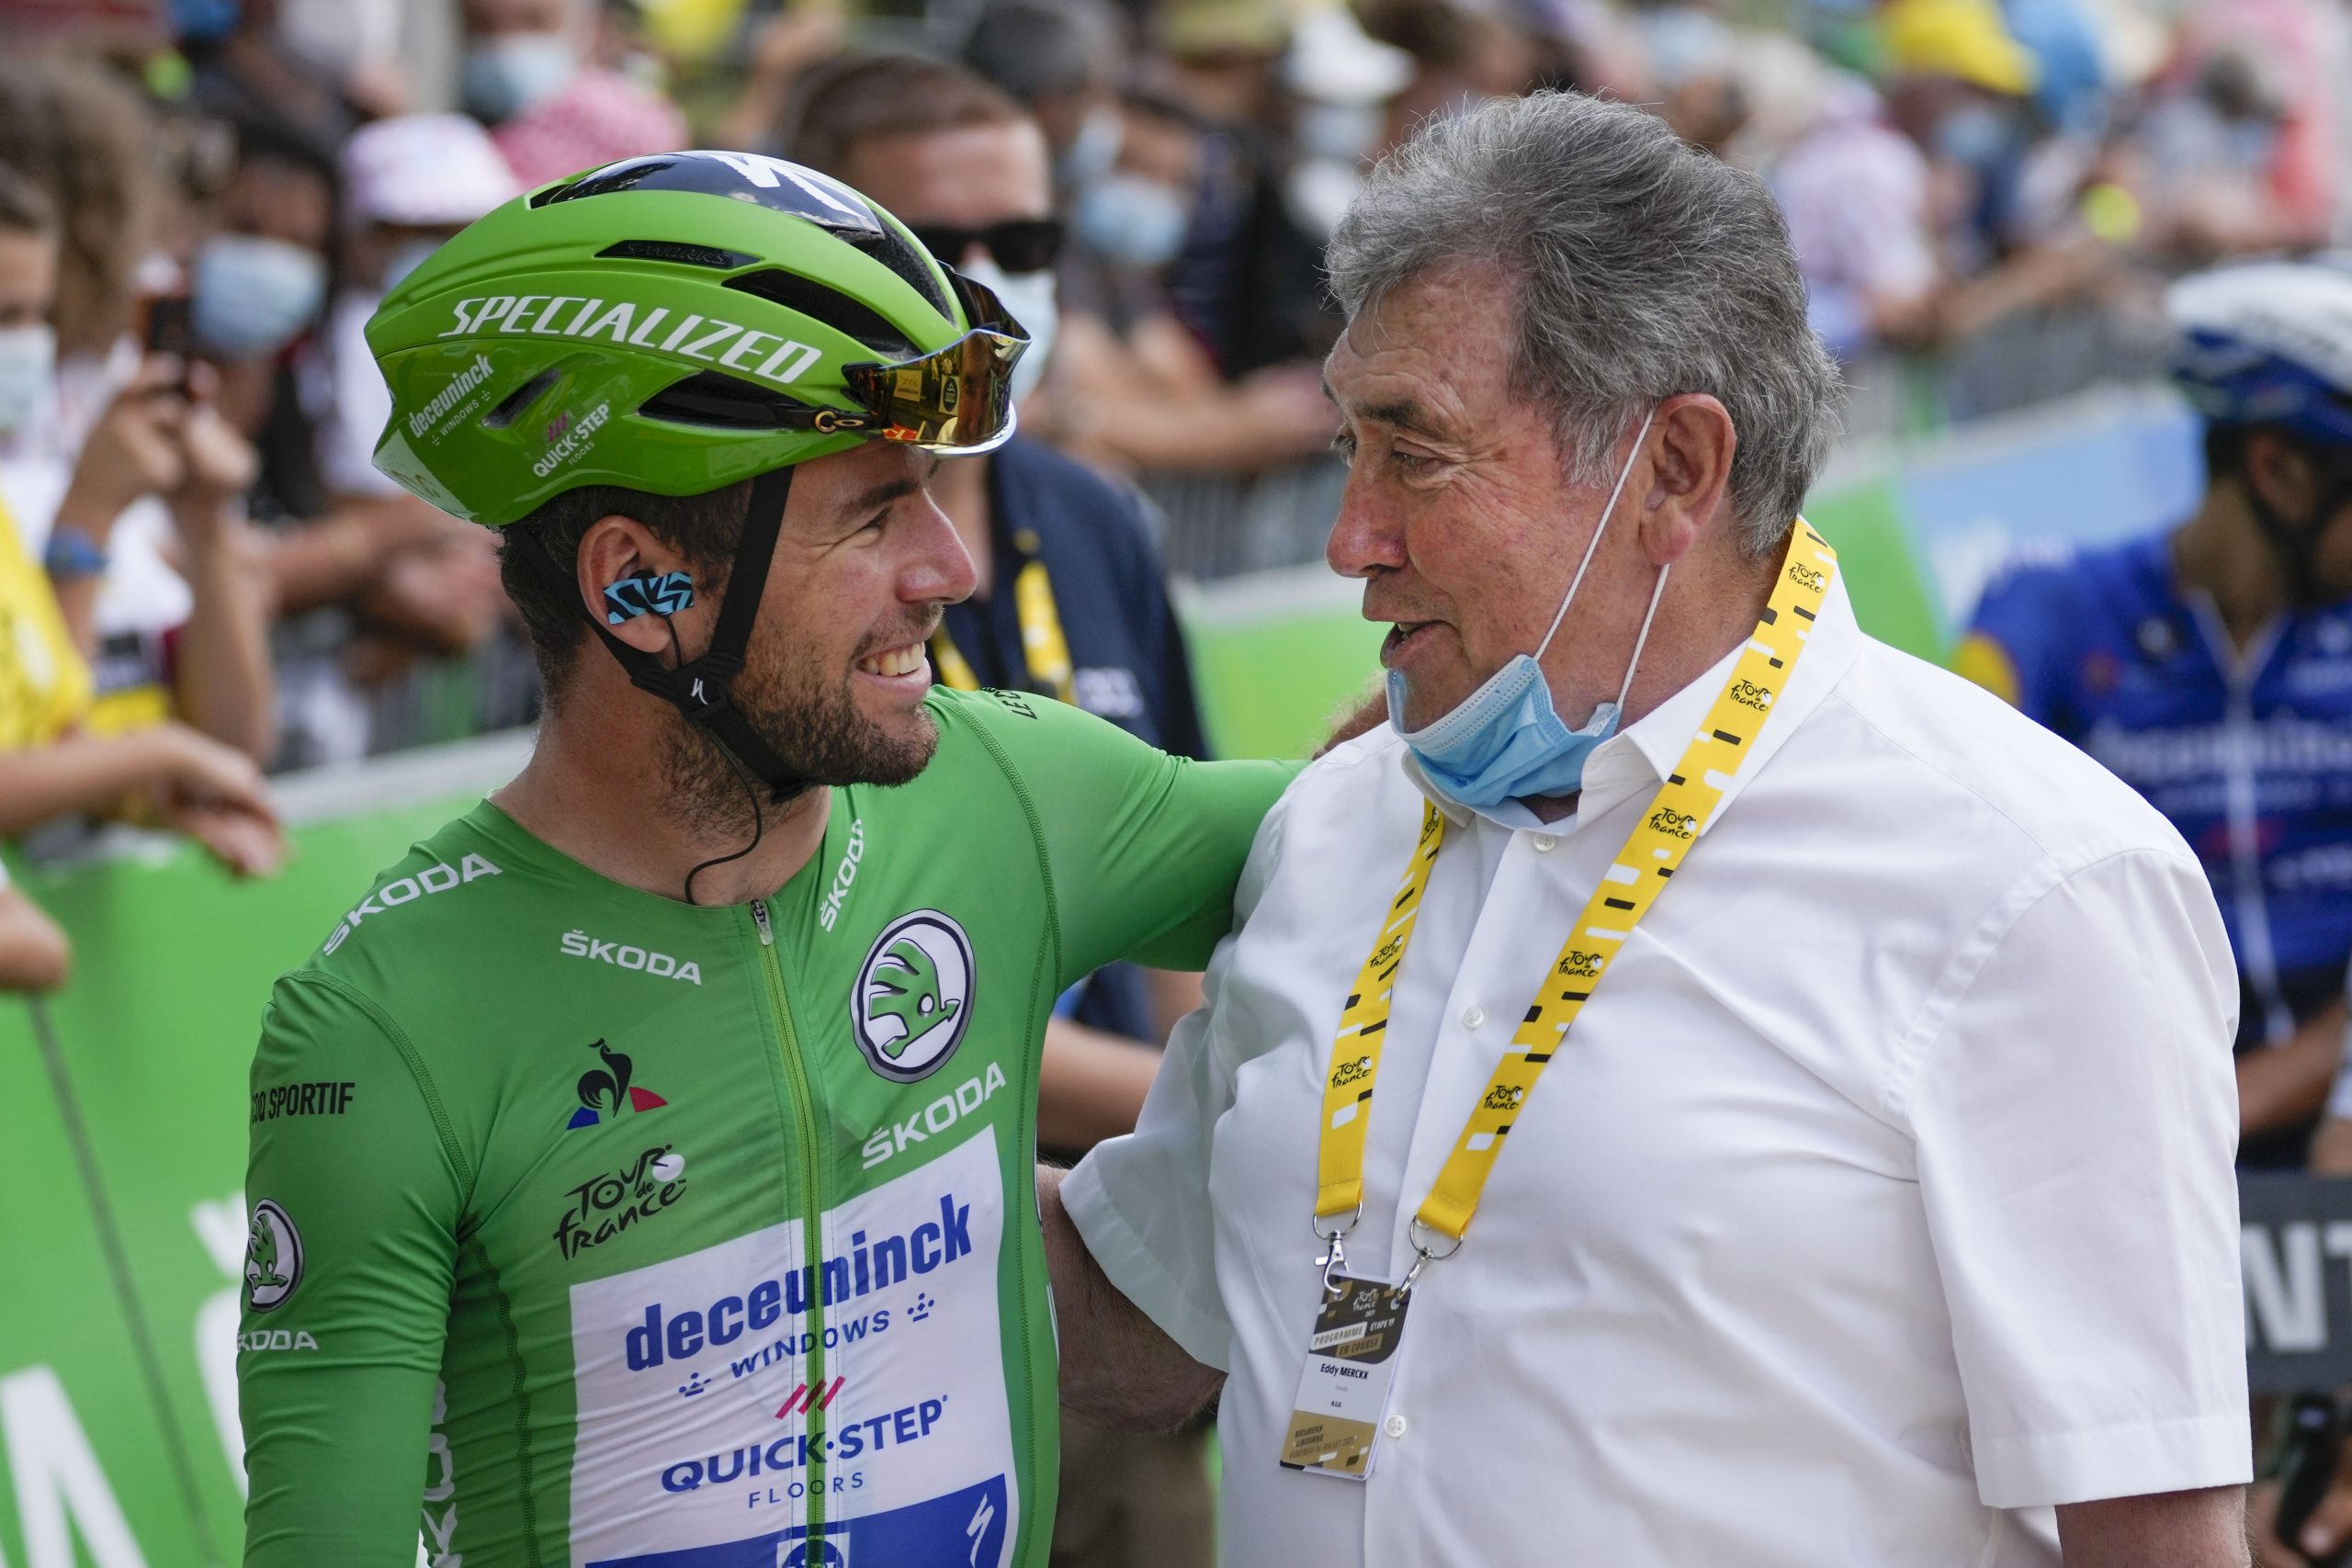 Pred etapo sta se pozdravila Mark Cavendish in Eddy Merckx. Foto: AP Photo/Daniel Cole